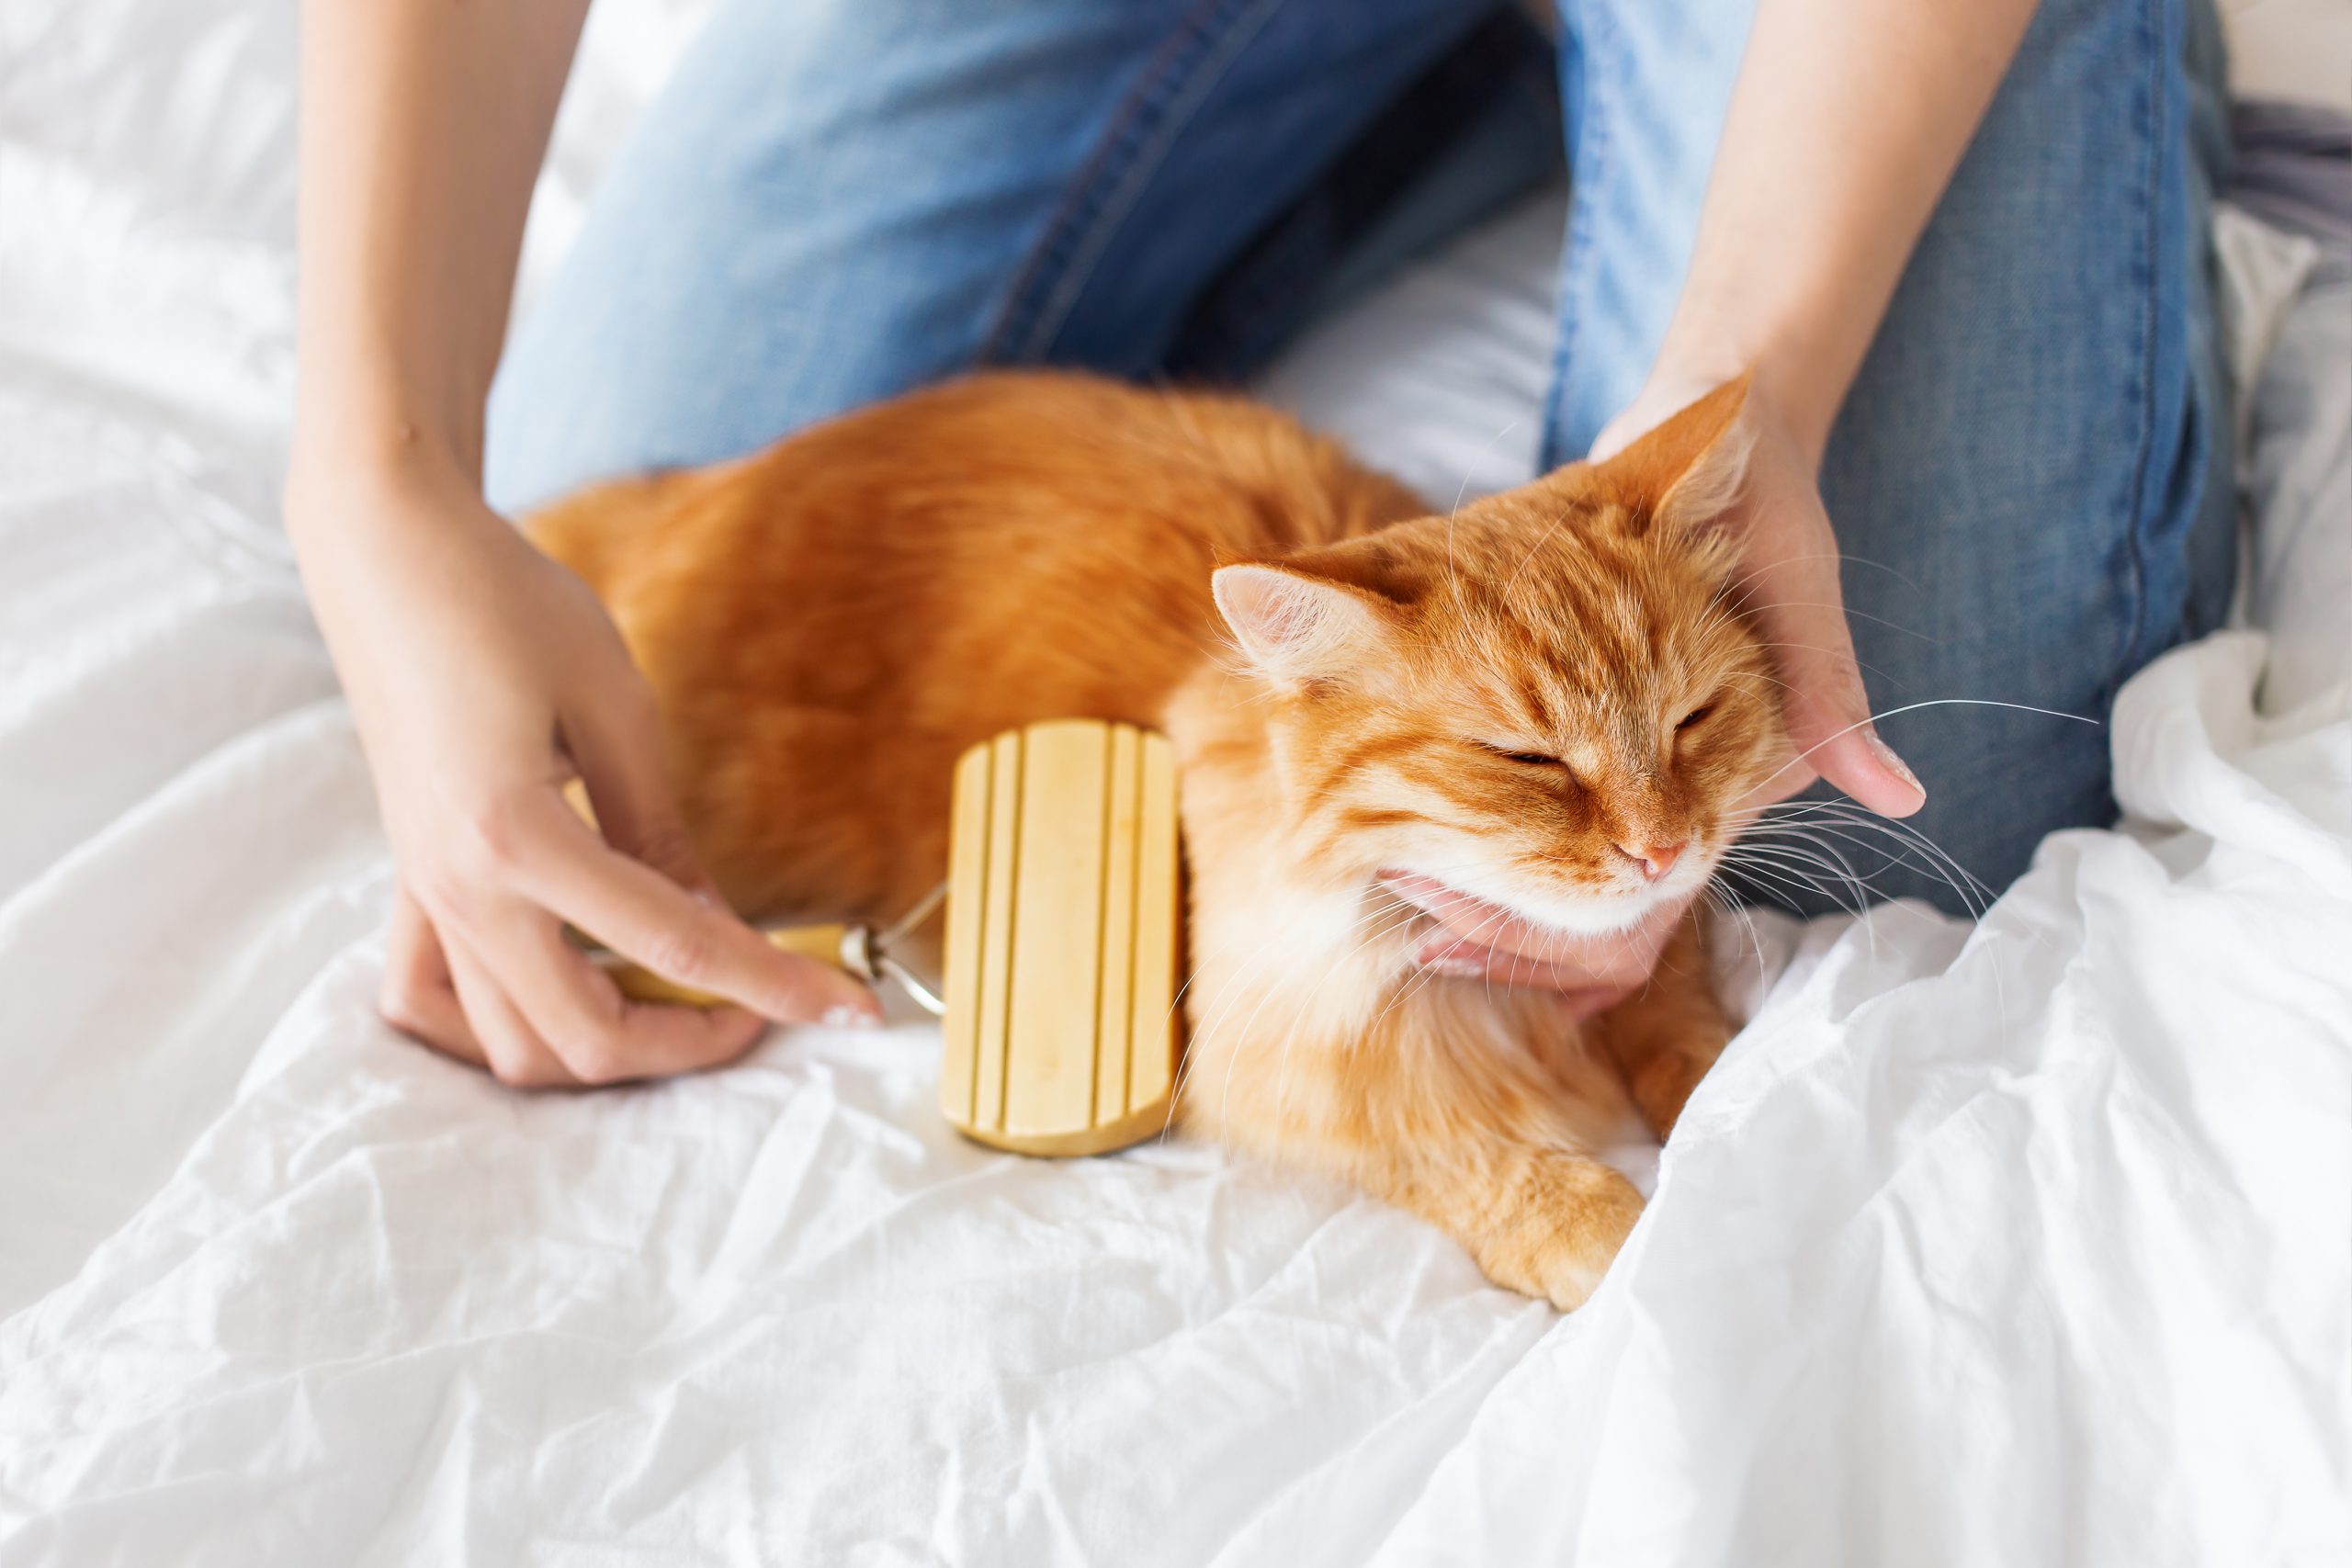 Toilettage du chat : devez-vous laver votre chat?